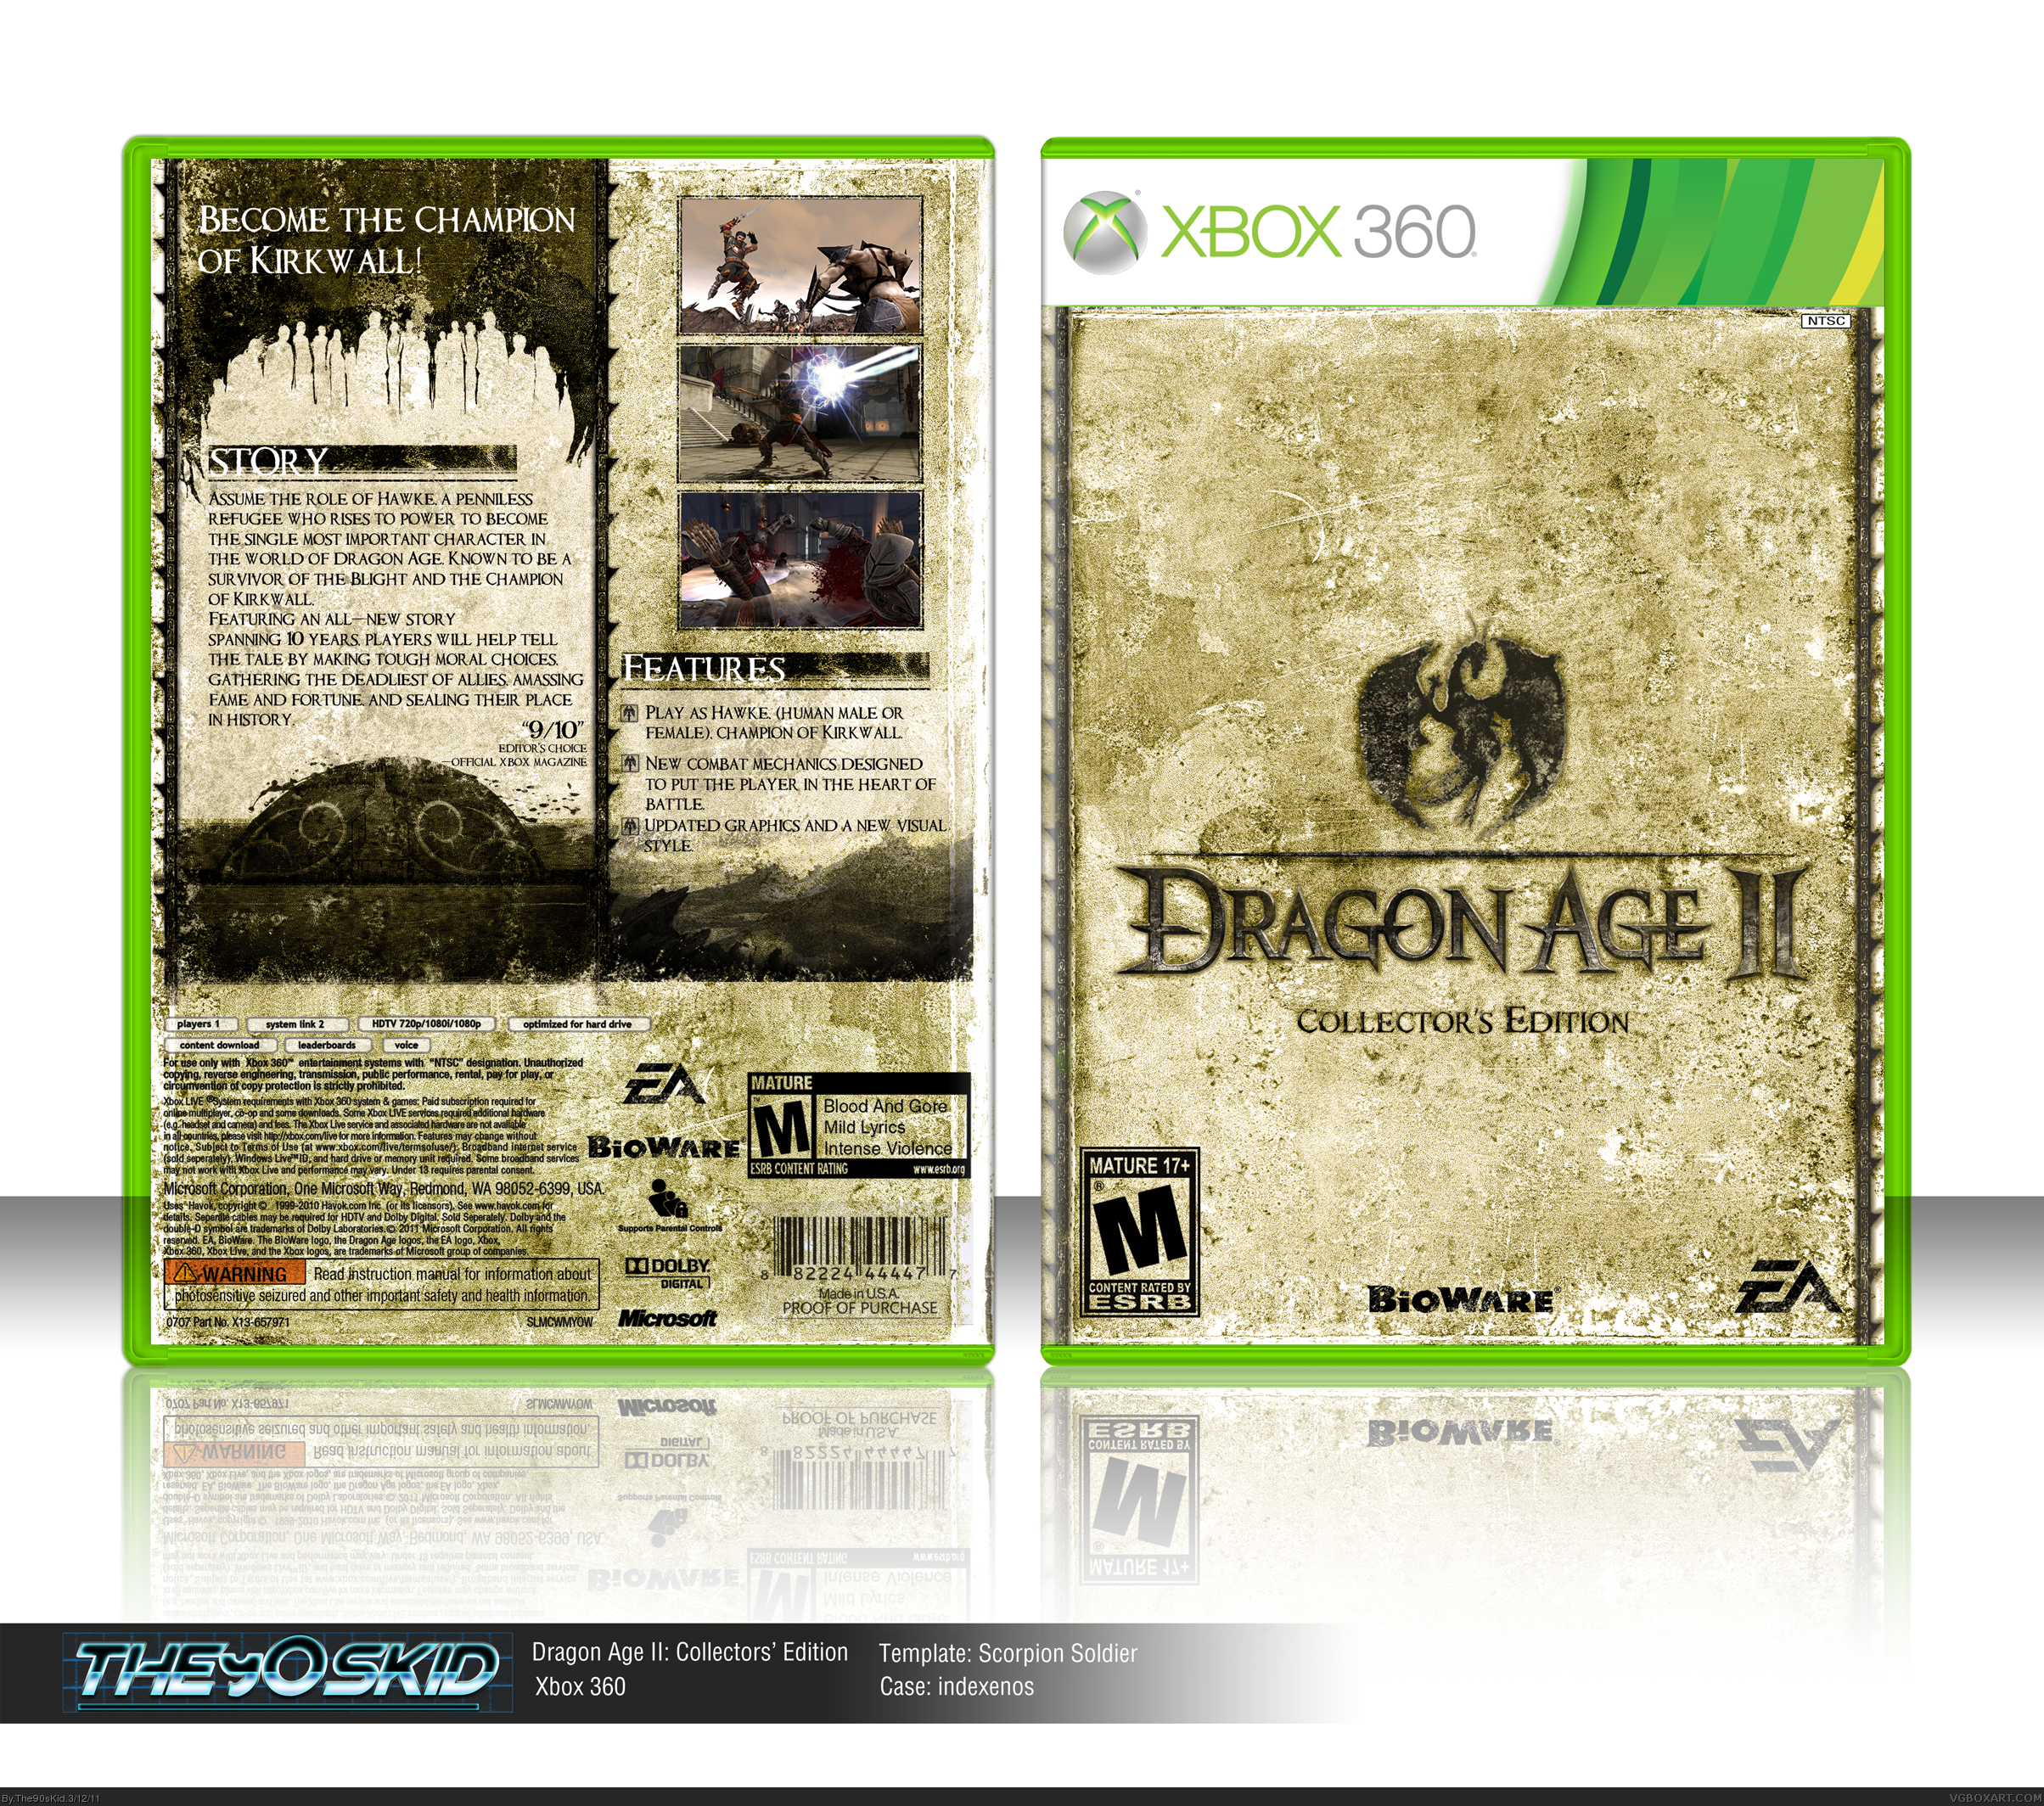 Dragon Age II: Collectors' Edition box cover